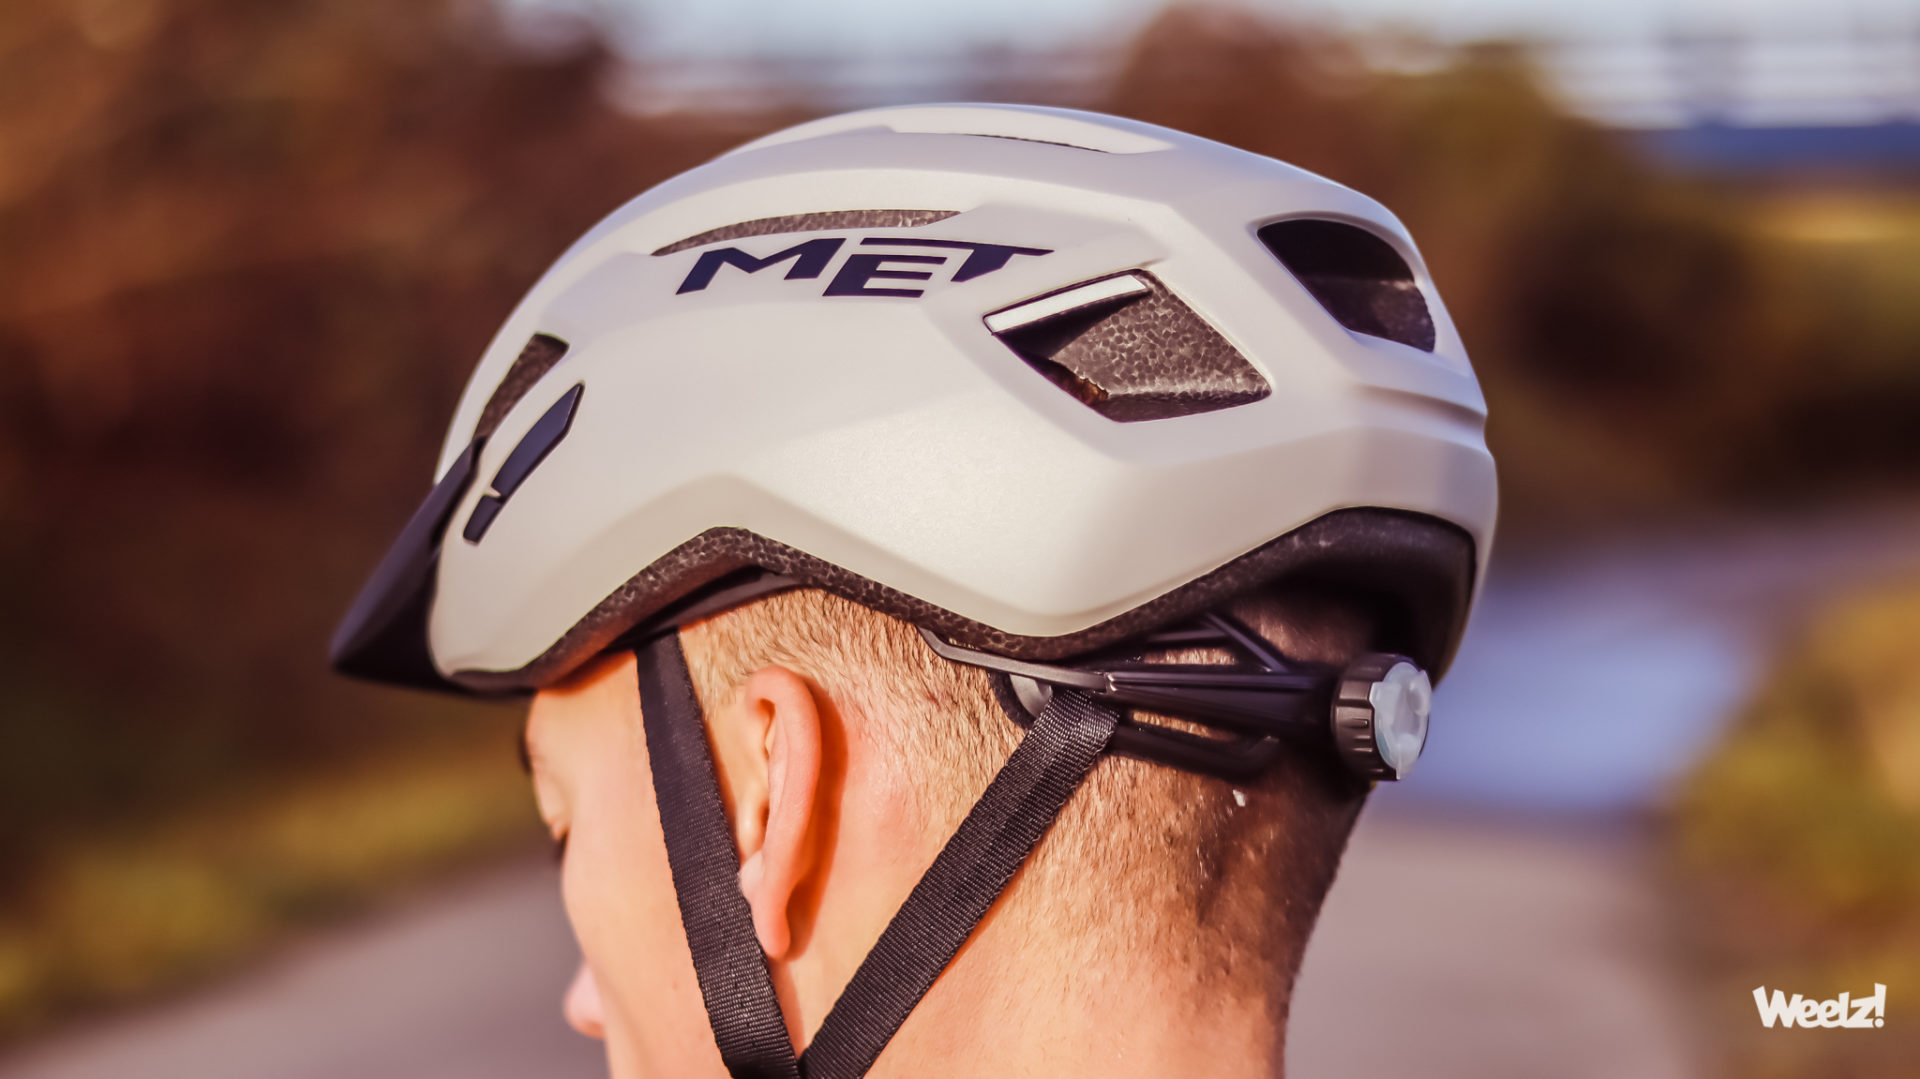 Weelz Test Casque Velo Met Helmets Vinci Allroad 2020 2331